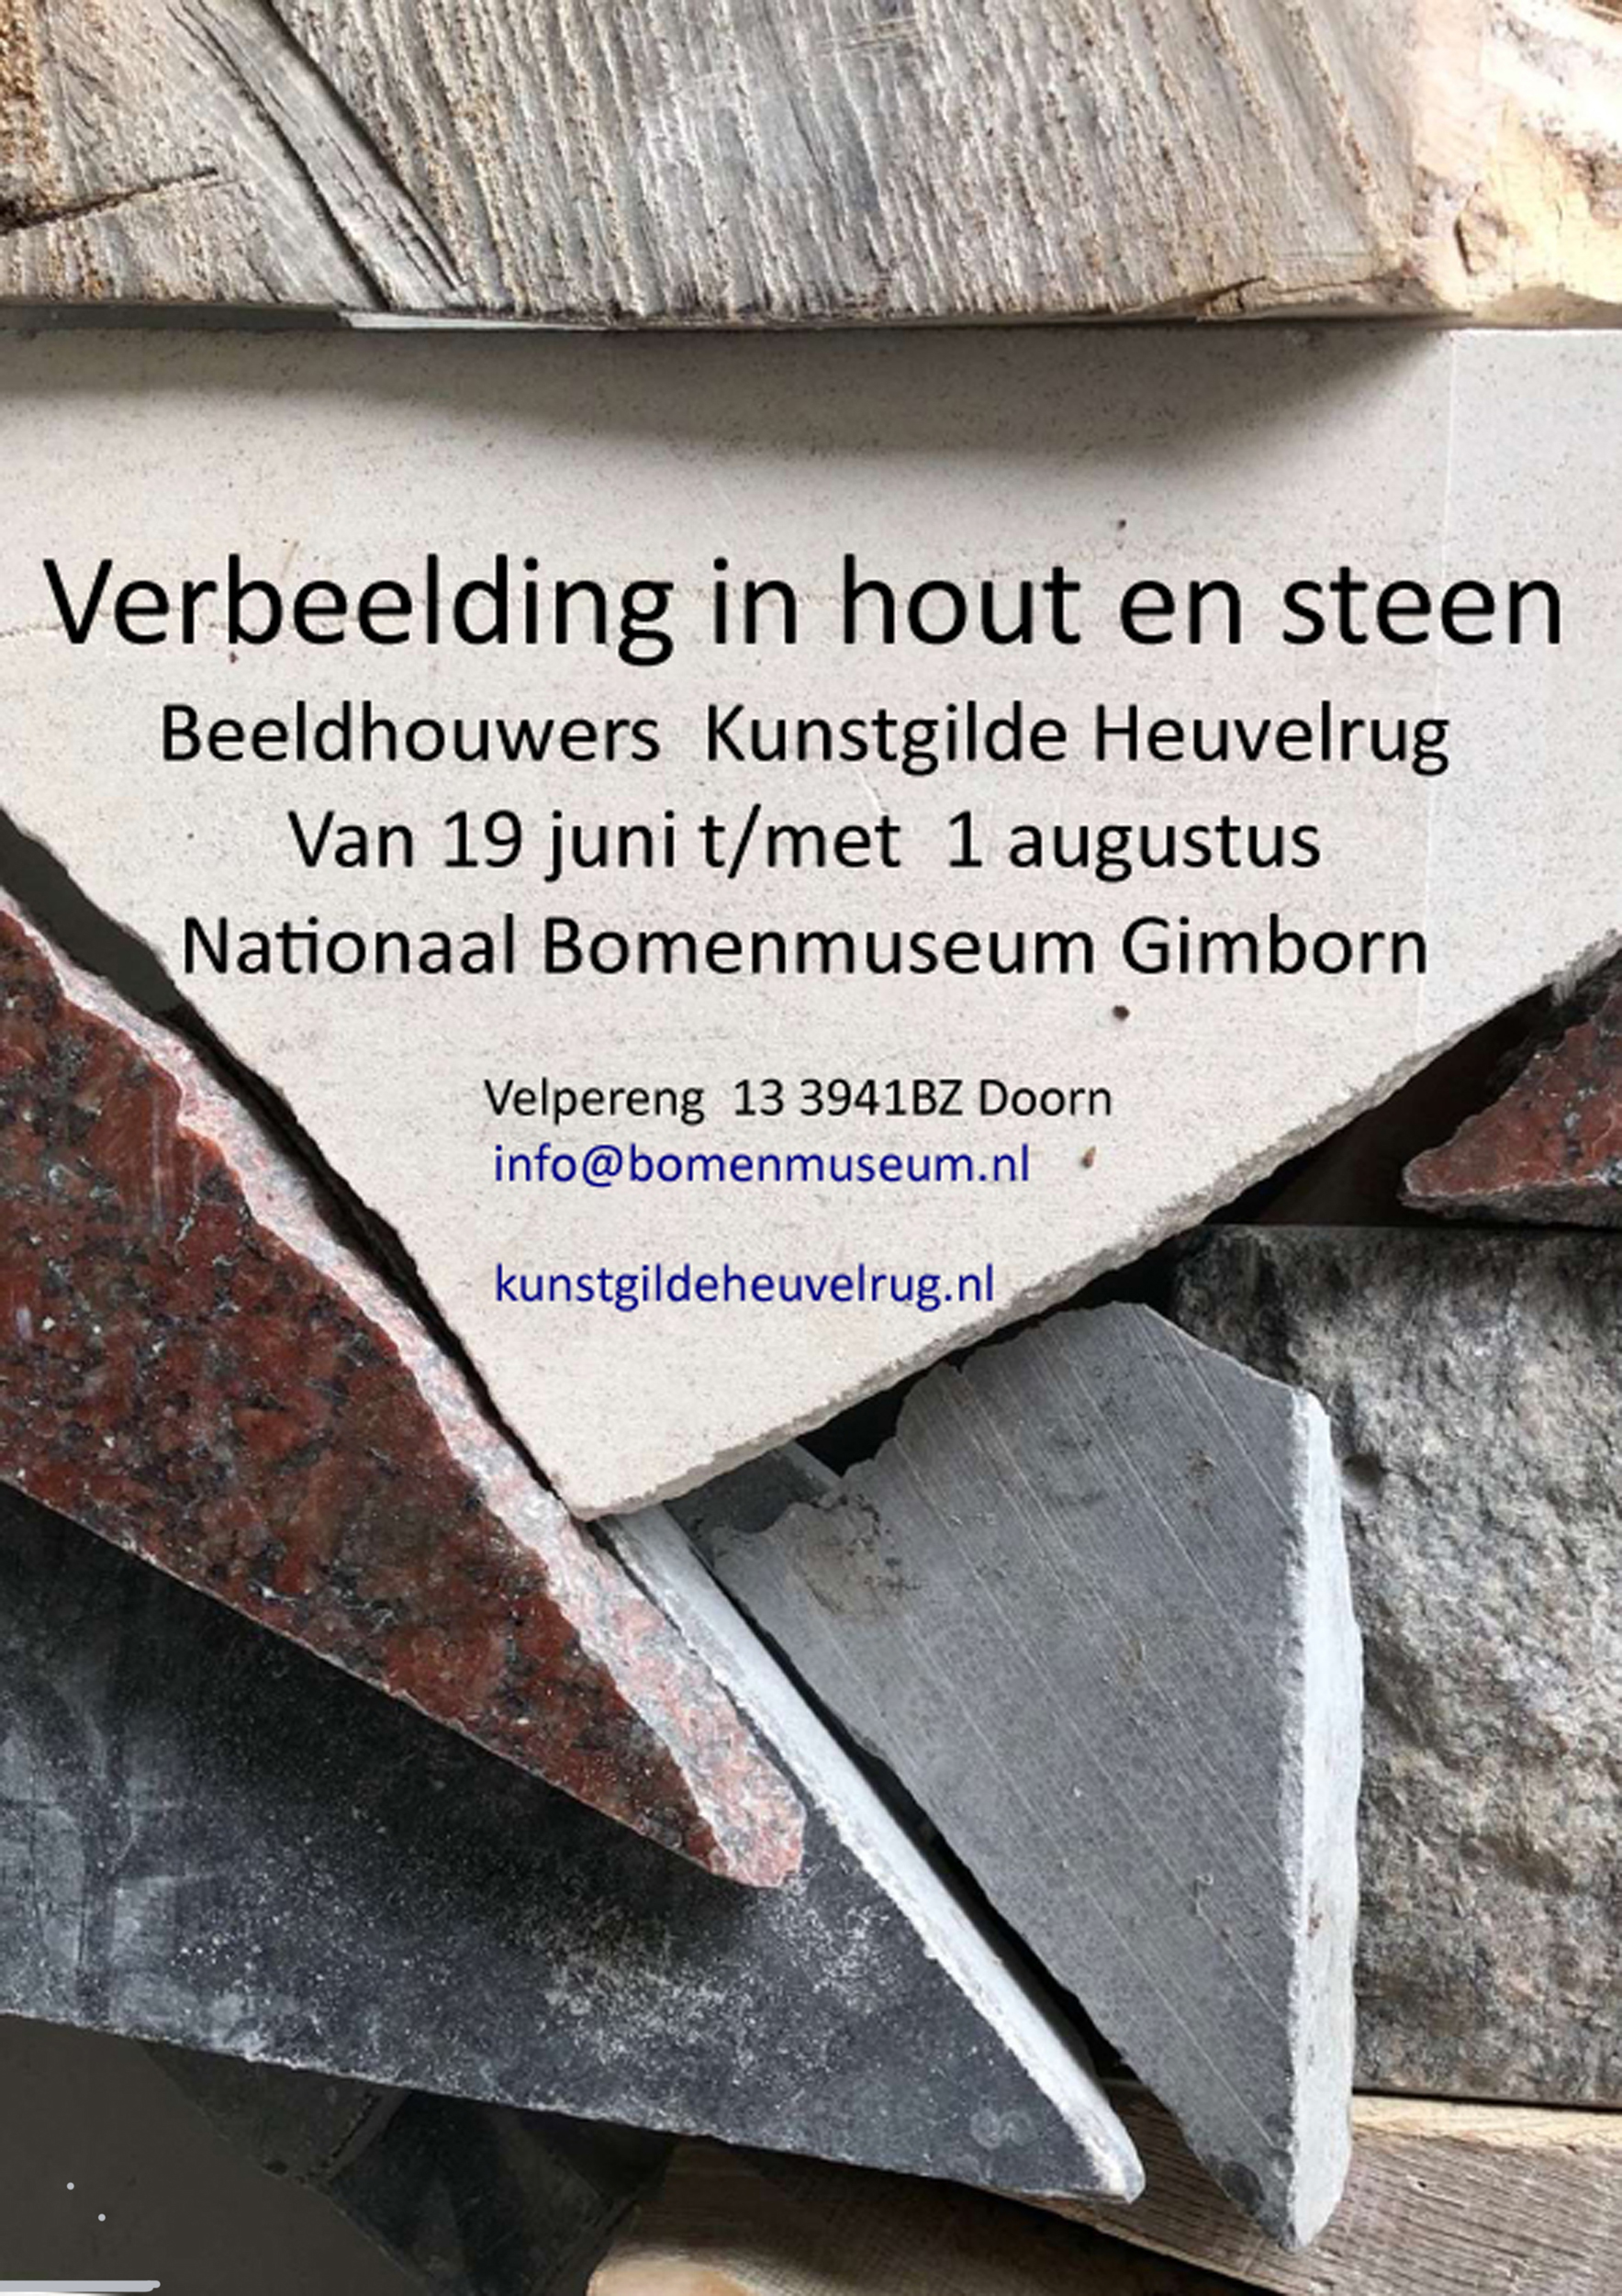 https://www.kunstgildeheuvelrug.nl/wp-content/uploads/2022/06/jpeg-poster-flyer-expositie-bomenmuseumkopie-1.jpg